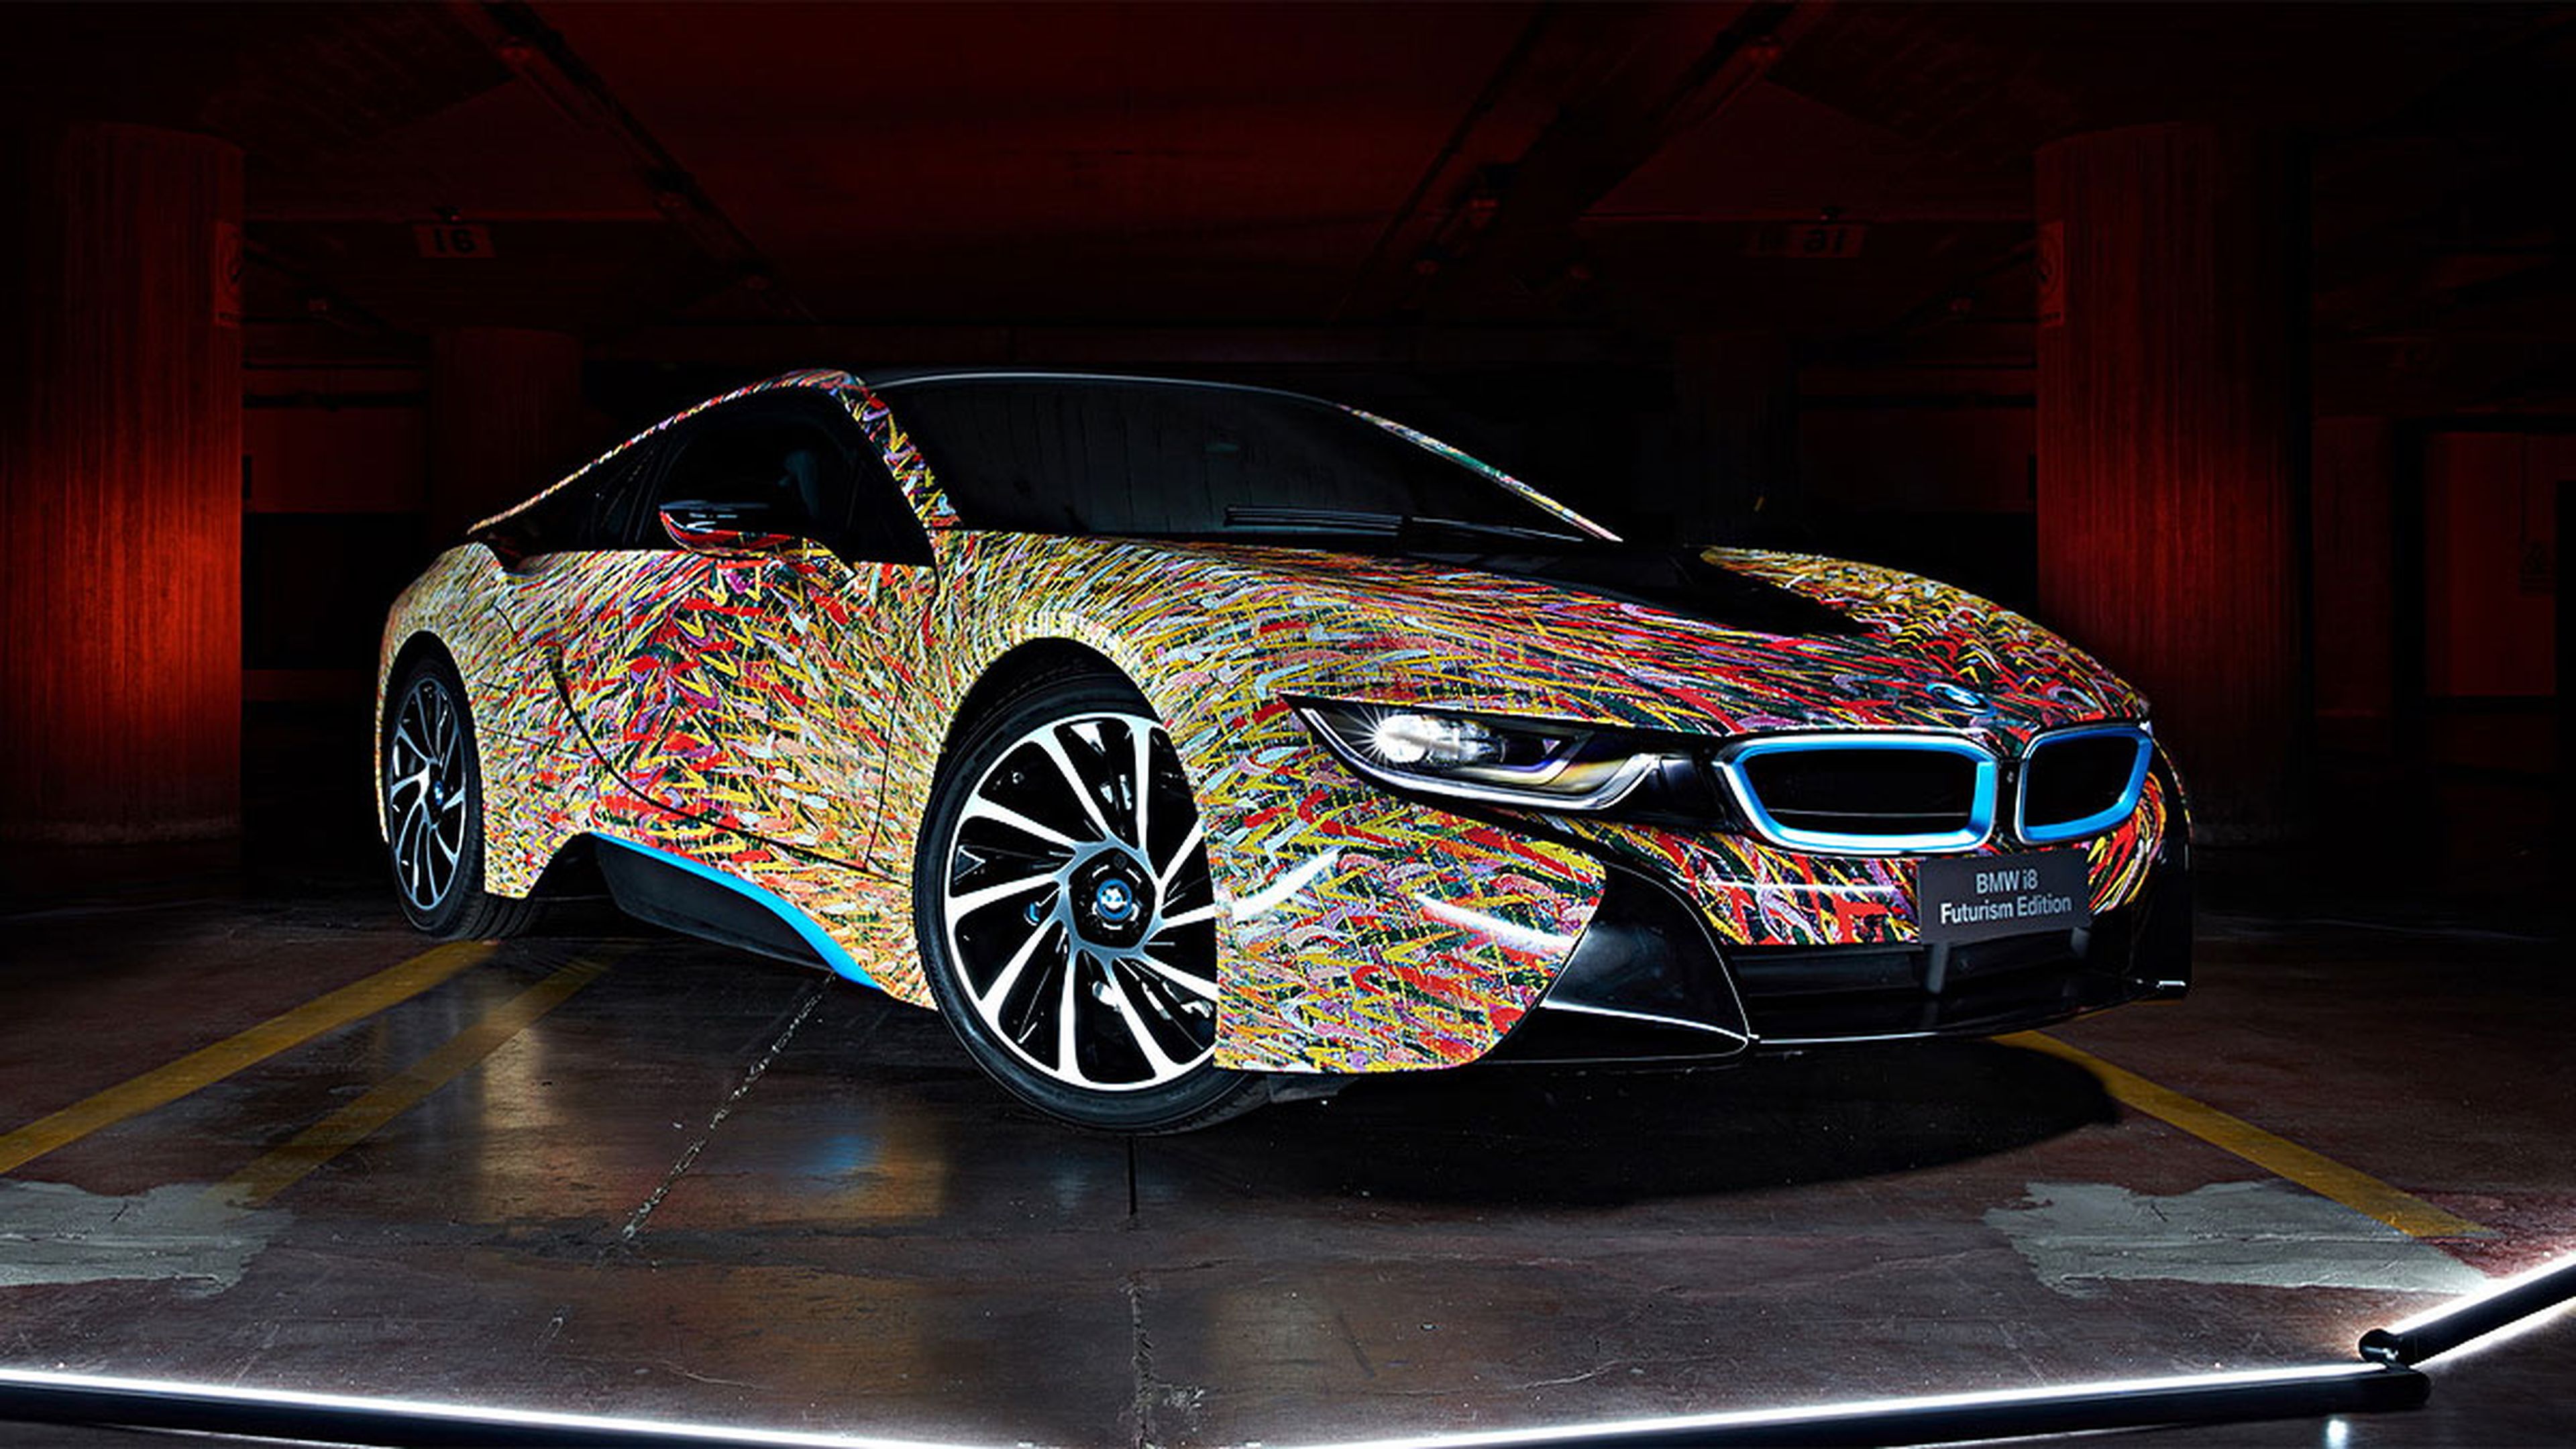 BMW i8 Futurism Edition, en imágenes